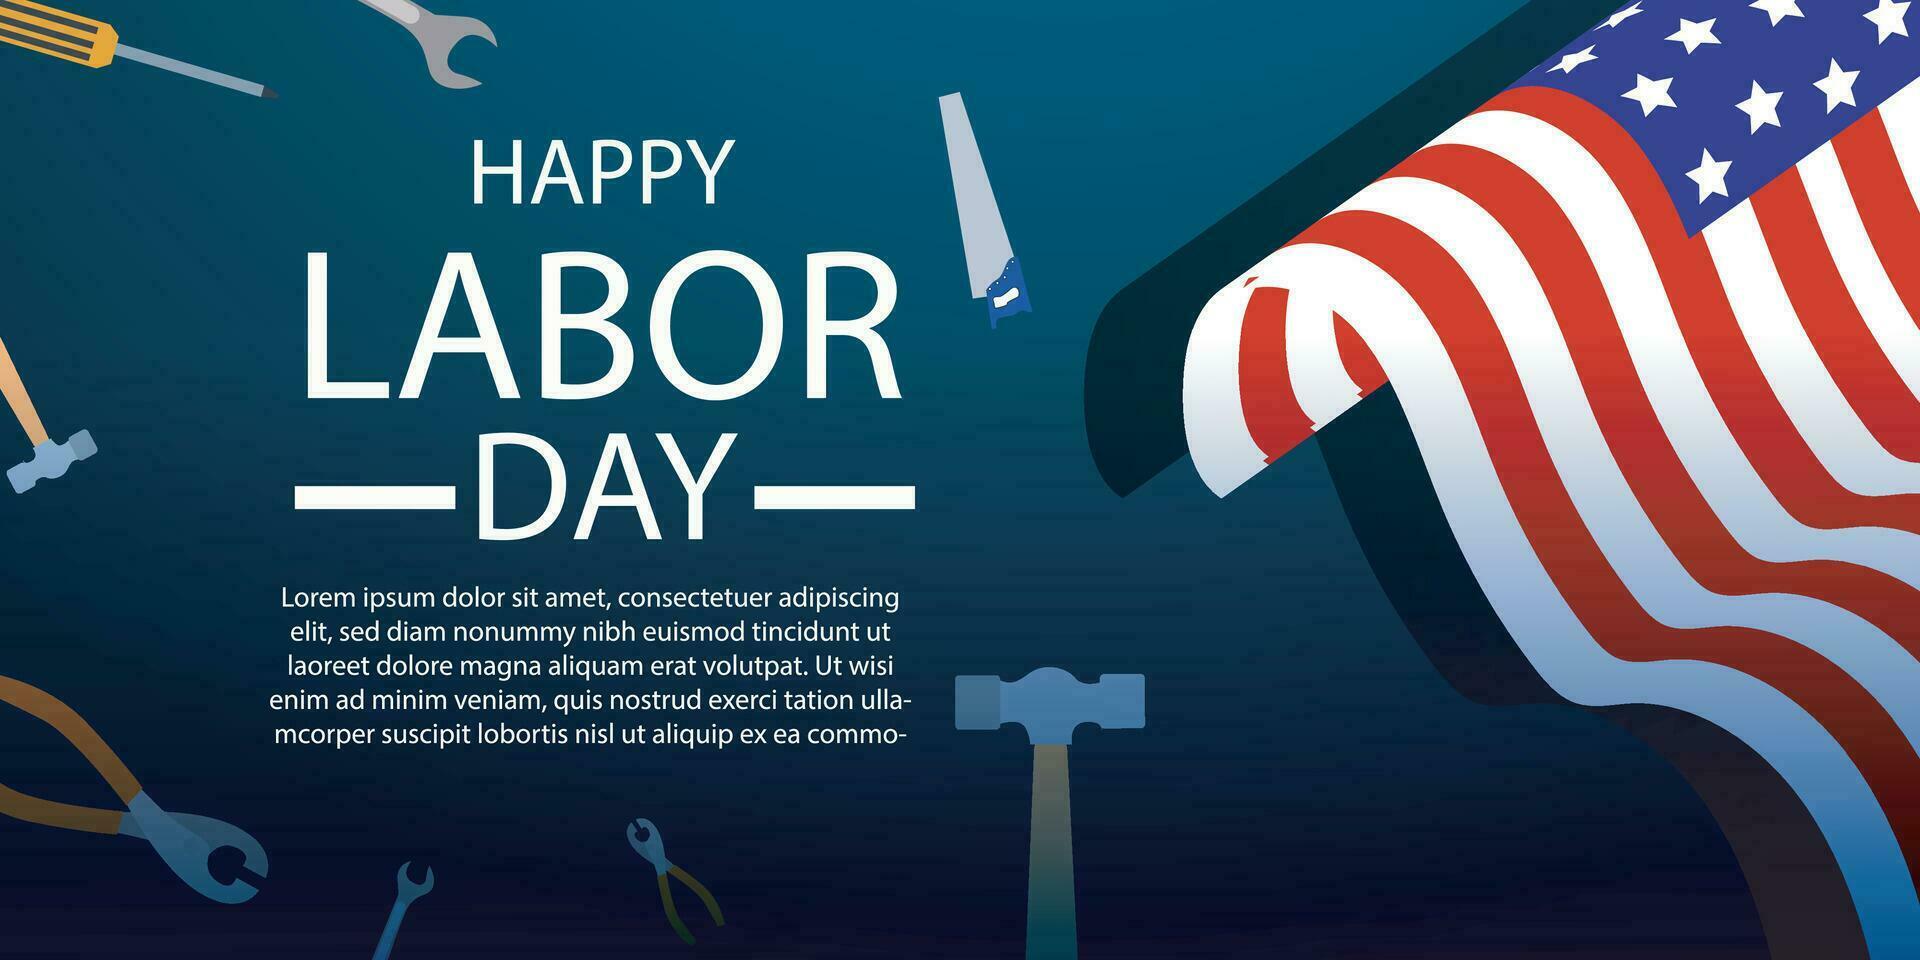 Lycklig arbetskraft dag 04 september, baner, social media posta, flygblad eller hälsning kort med arbetstagare och kamp tema och amerikan flagga. vektor illustration